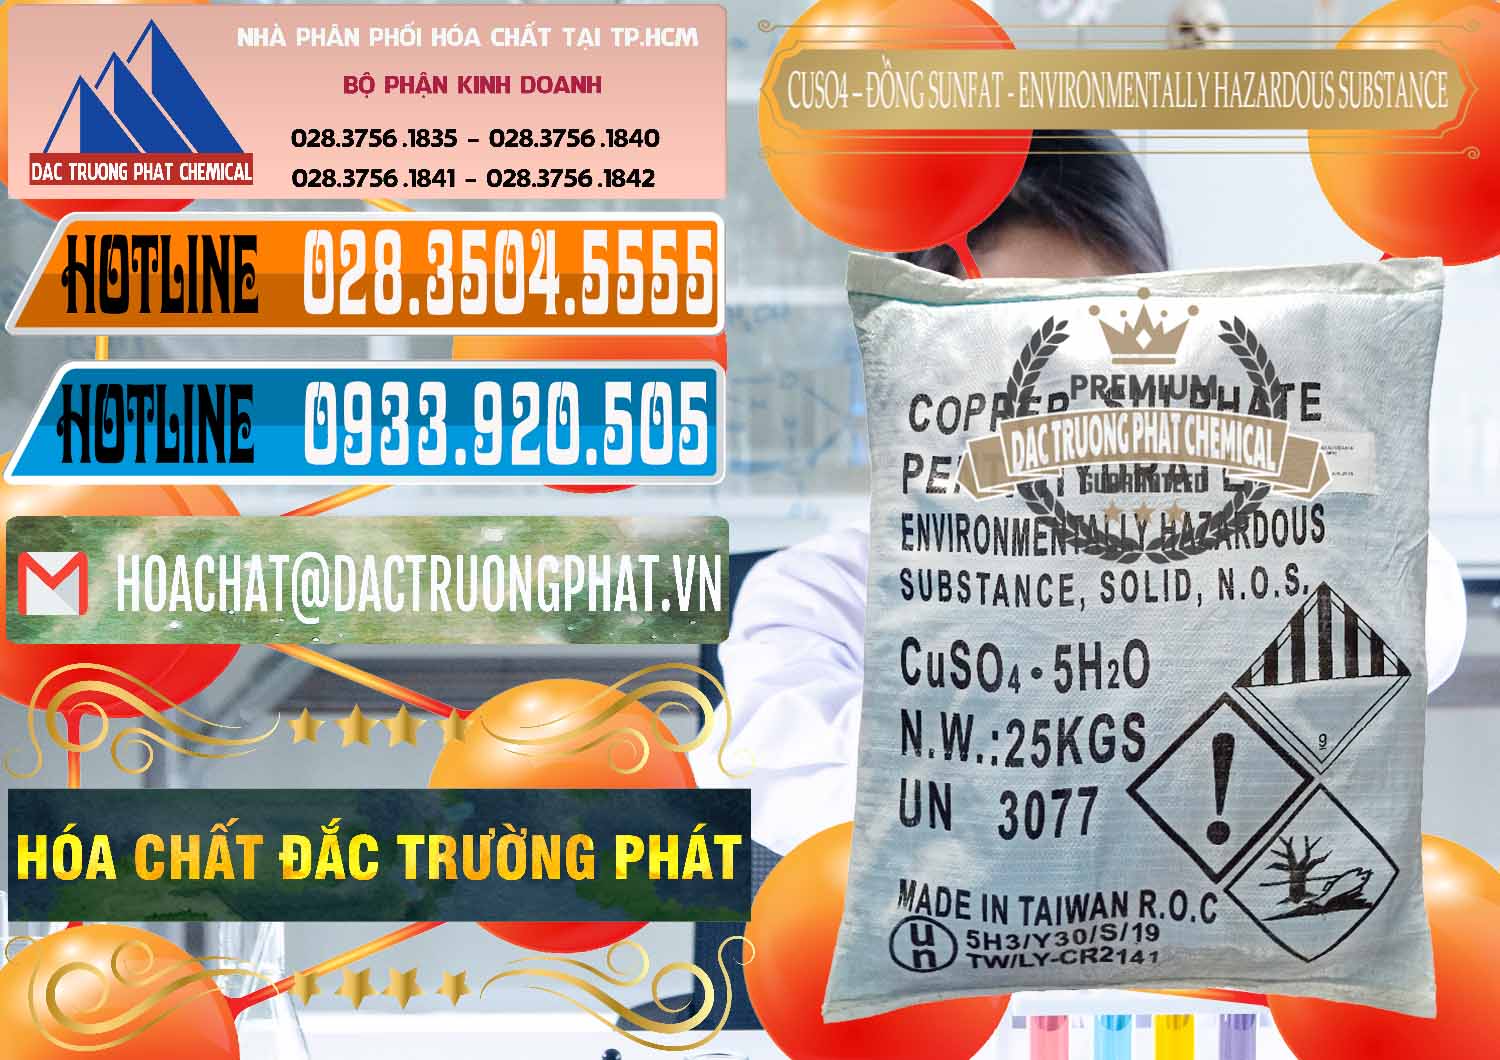 Công ty kinh doanh & bán CuSO4 – Đồng Sunfat Đài Loan Taiwan - 0059 - Nhà nhập khẩu và cung cấp hóa chất tại TP.HCM - stmp.net